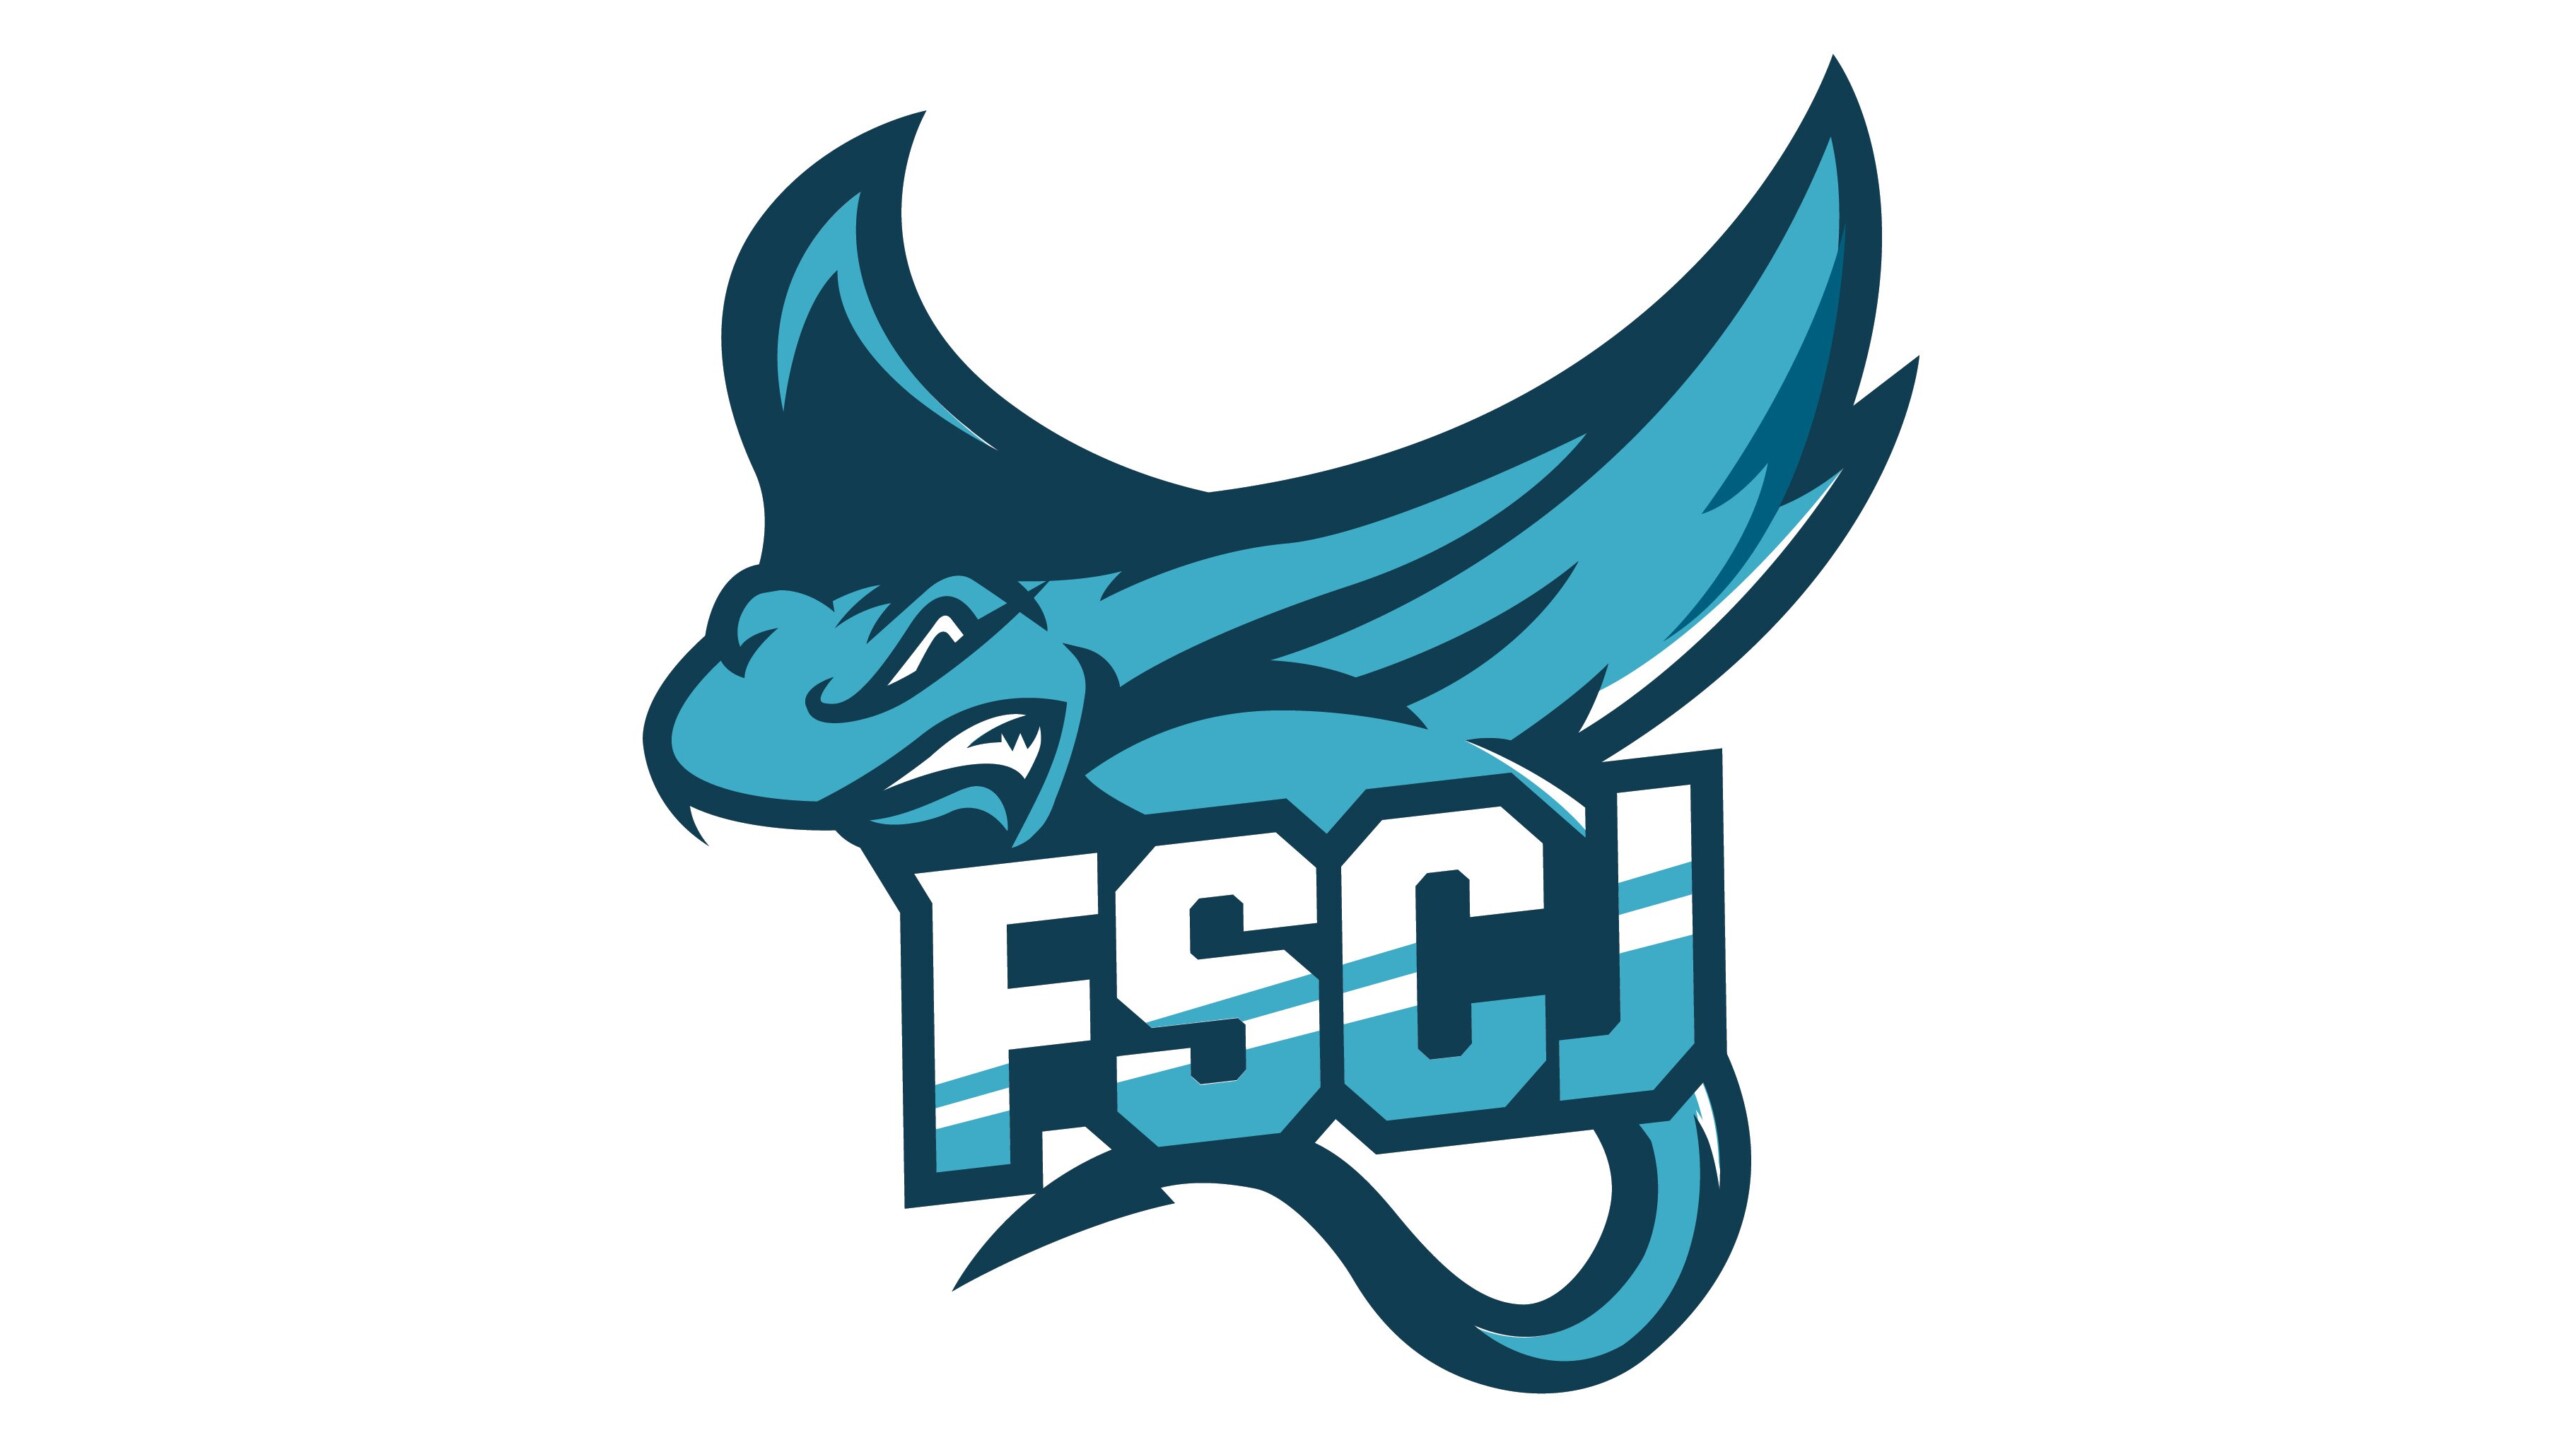 FSCJ's new mascot is the manta ray.